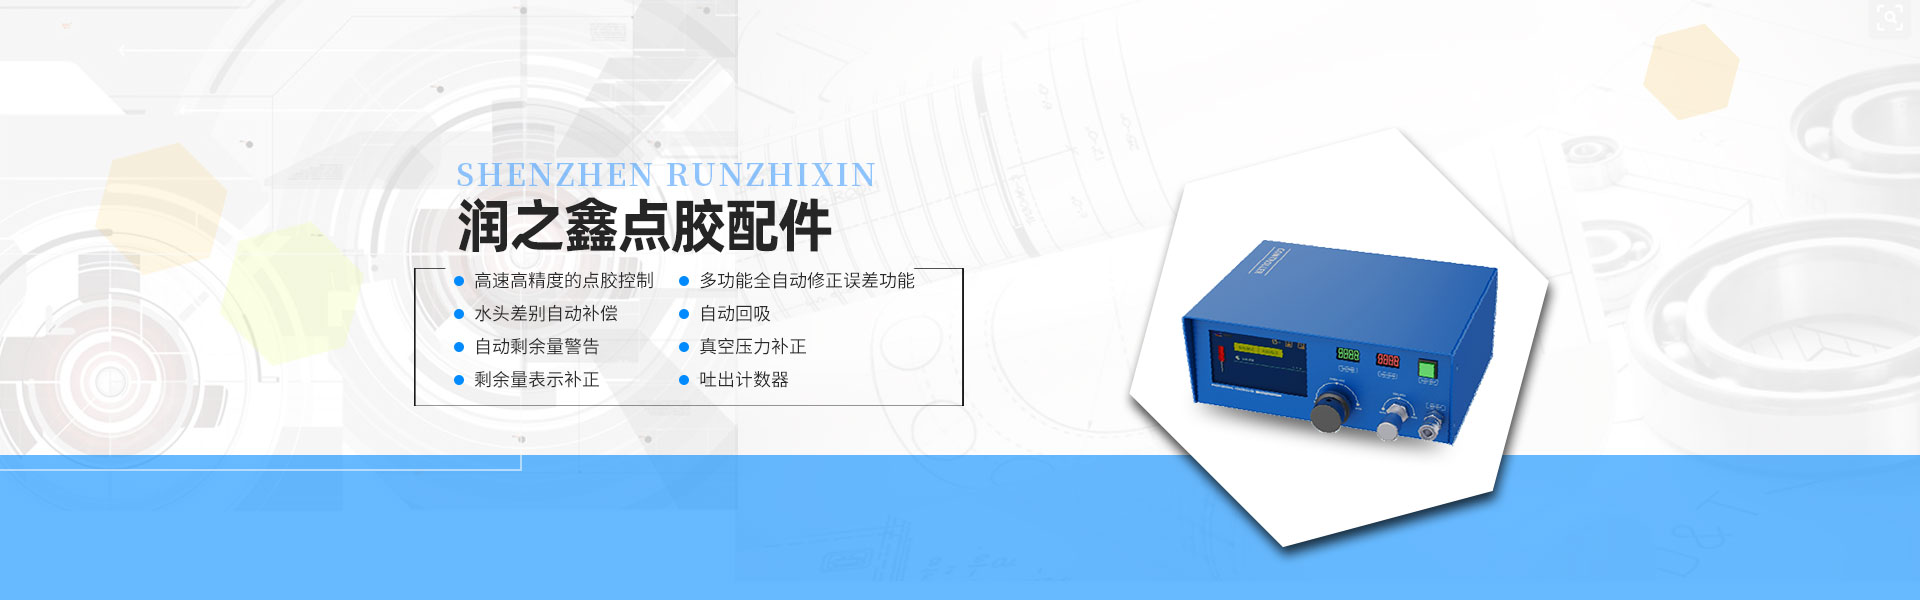 精密气动式点胶控制器 / SX-600 >>-深圳市润之鑫科技有限公司